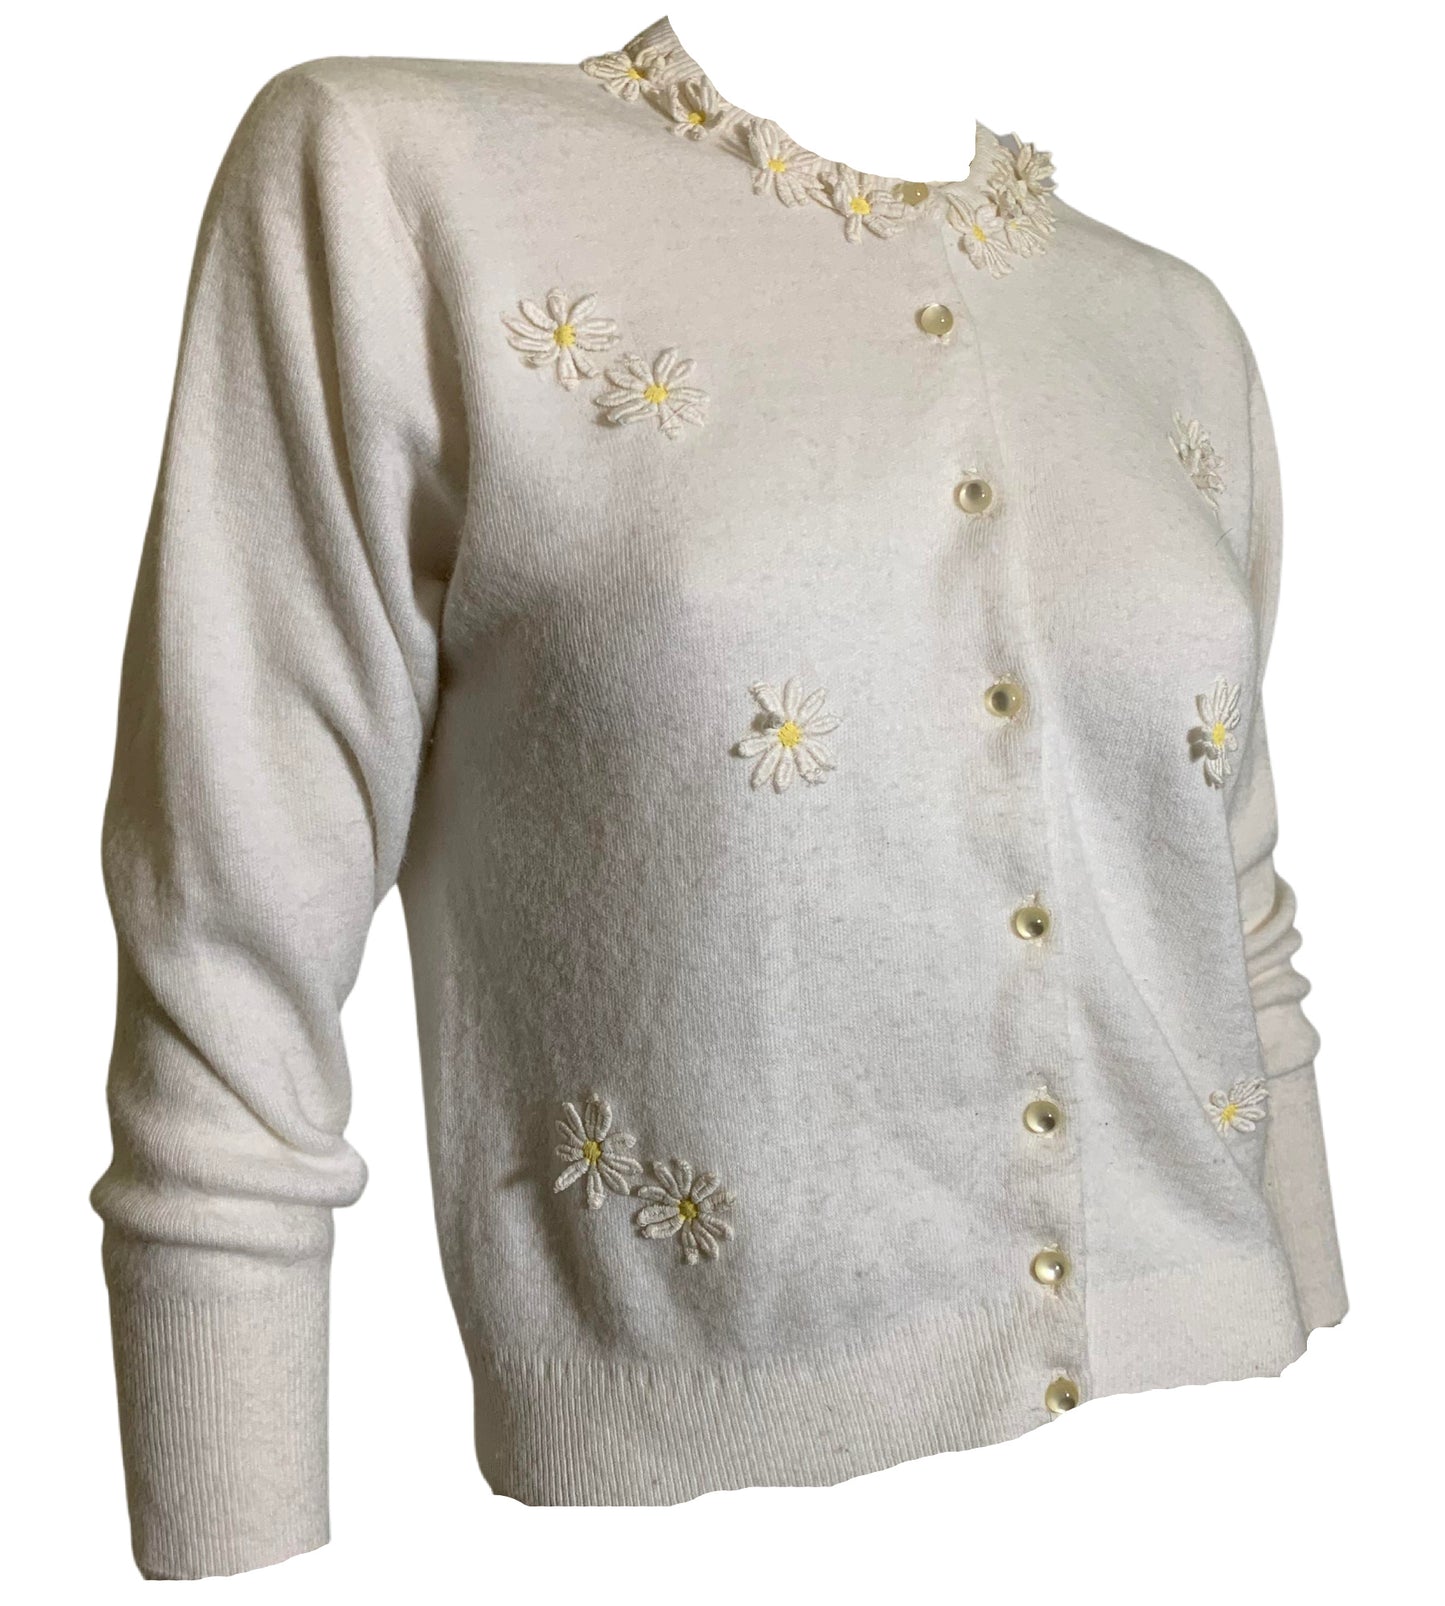 Daisy Chain Applique Trimmed White Orlon Cardigan Sweater circa 1950s